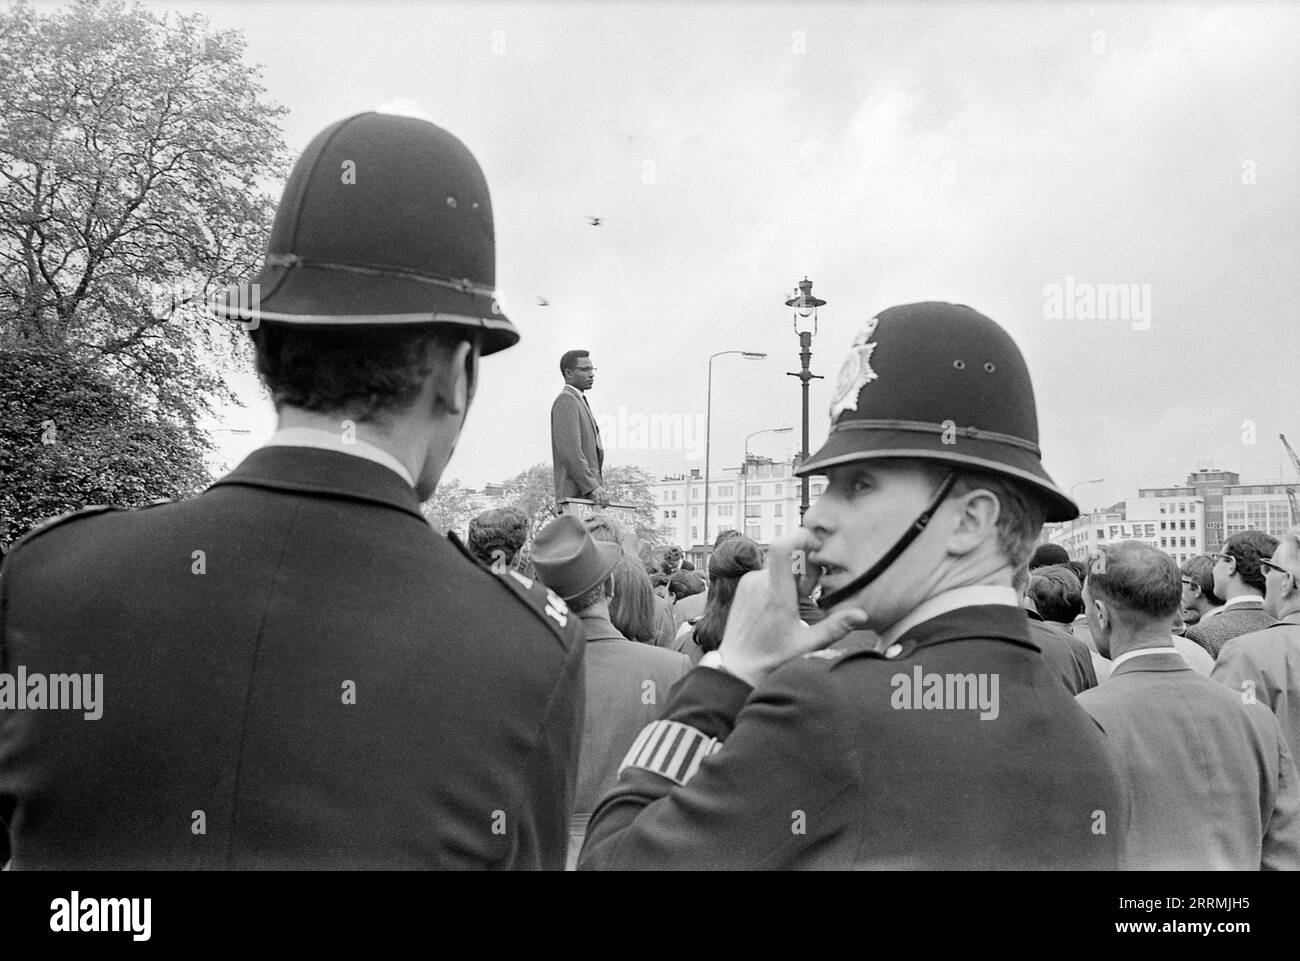 London. 1965: Ein Mann, der auf einer Plattform steht und den Panafrikanischen Nationalkreuzzug vertritt, spricht in der Speaker’s Corner im Hyde Park, London, vor einer Menge von Zuschauern. Zwei Metropoliten stehen im Vordergrund, einer schaut über seine Schulter, das Pflichtarmband auf seinem Ärmel ist zu sehen. Stockfoto